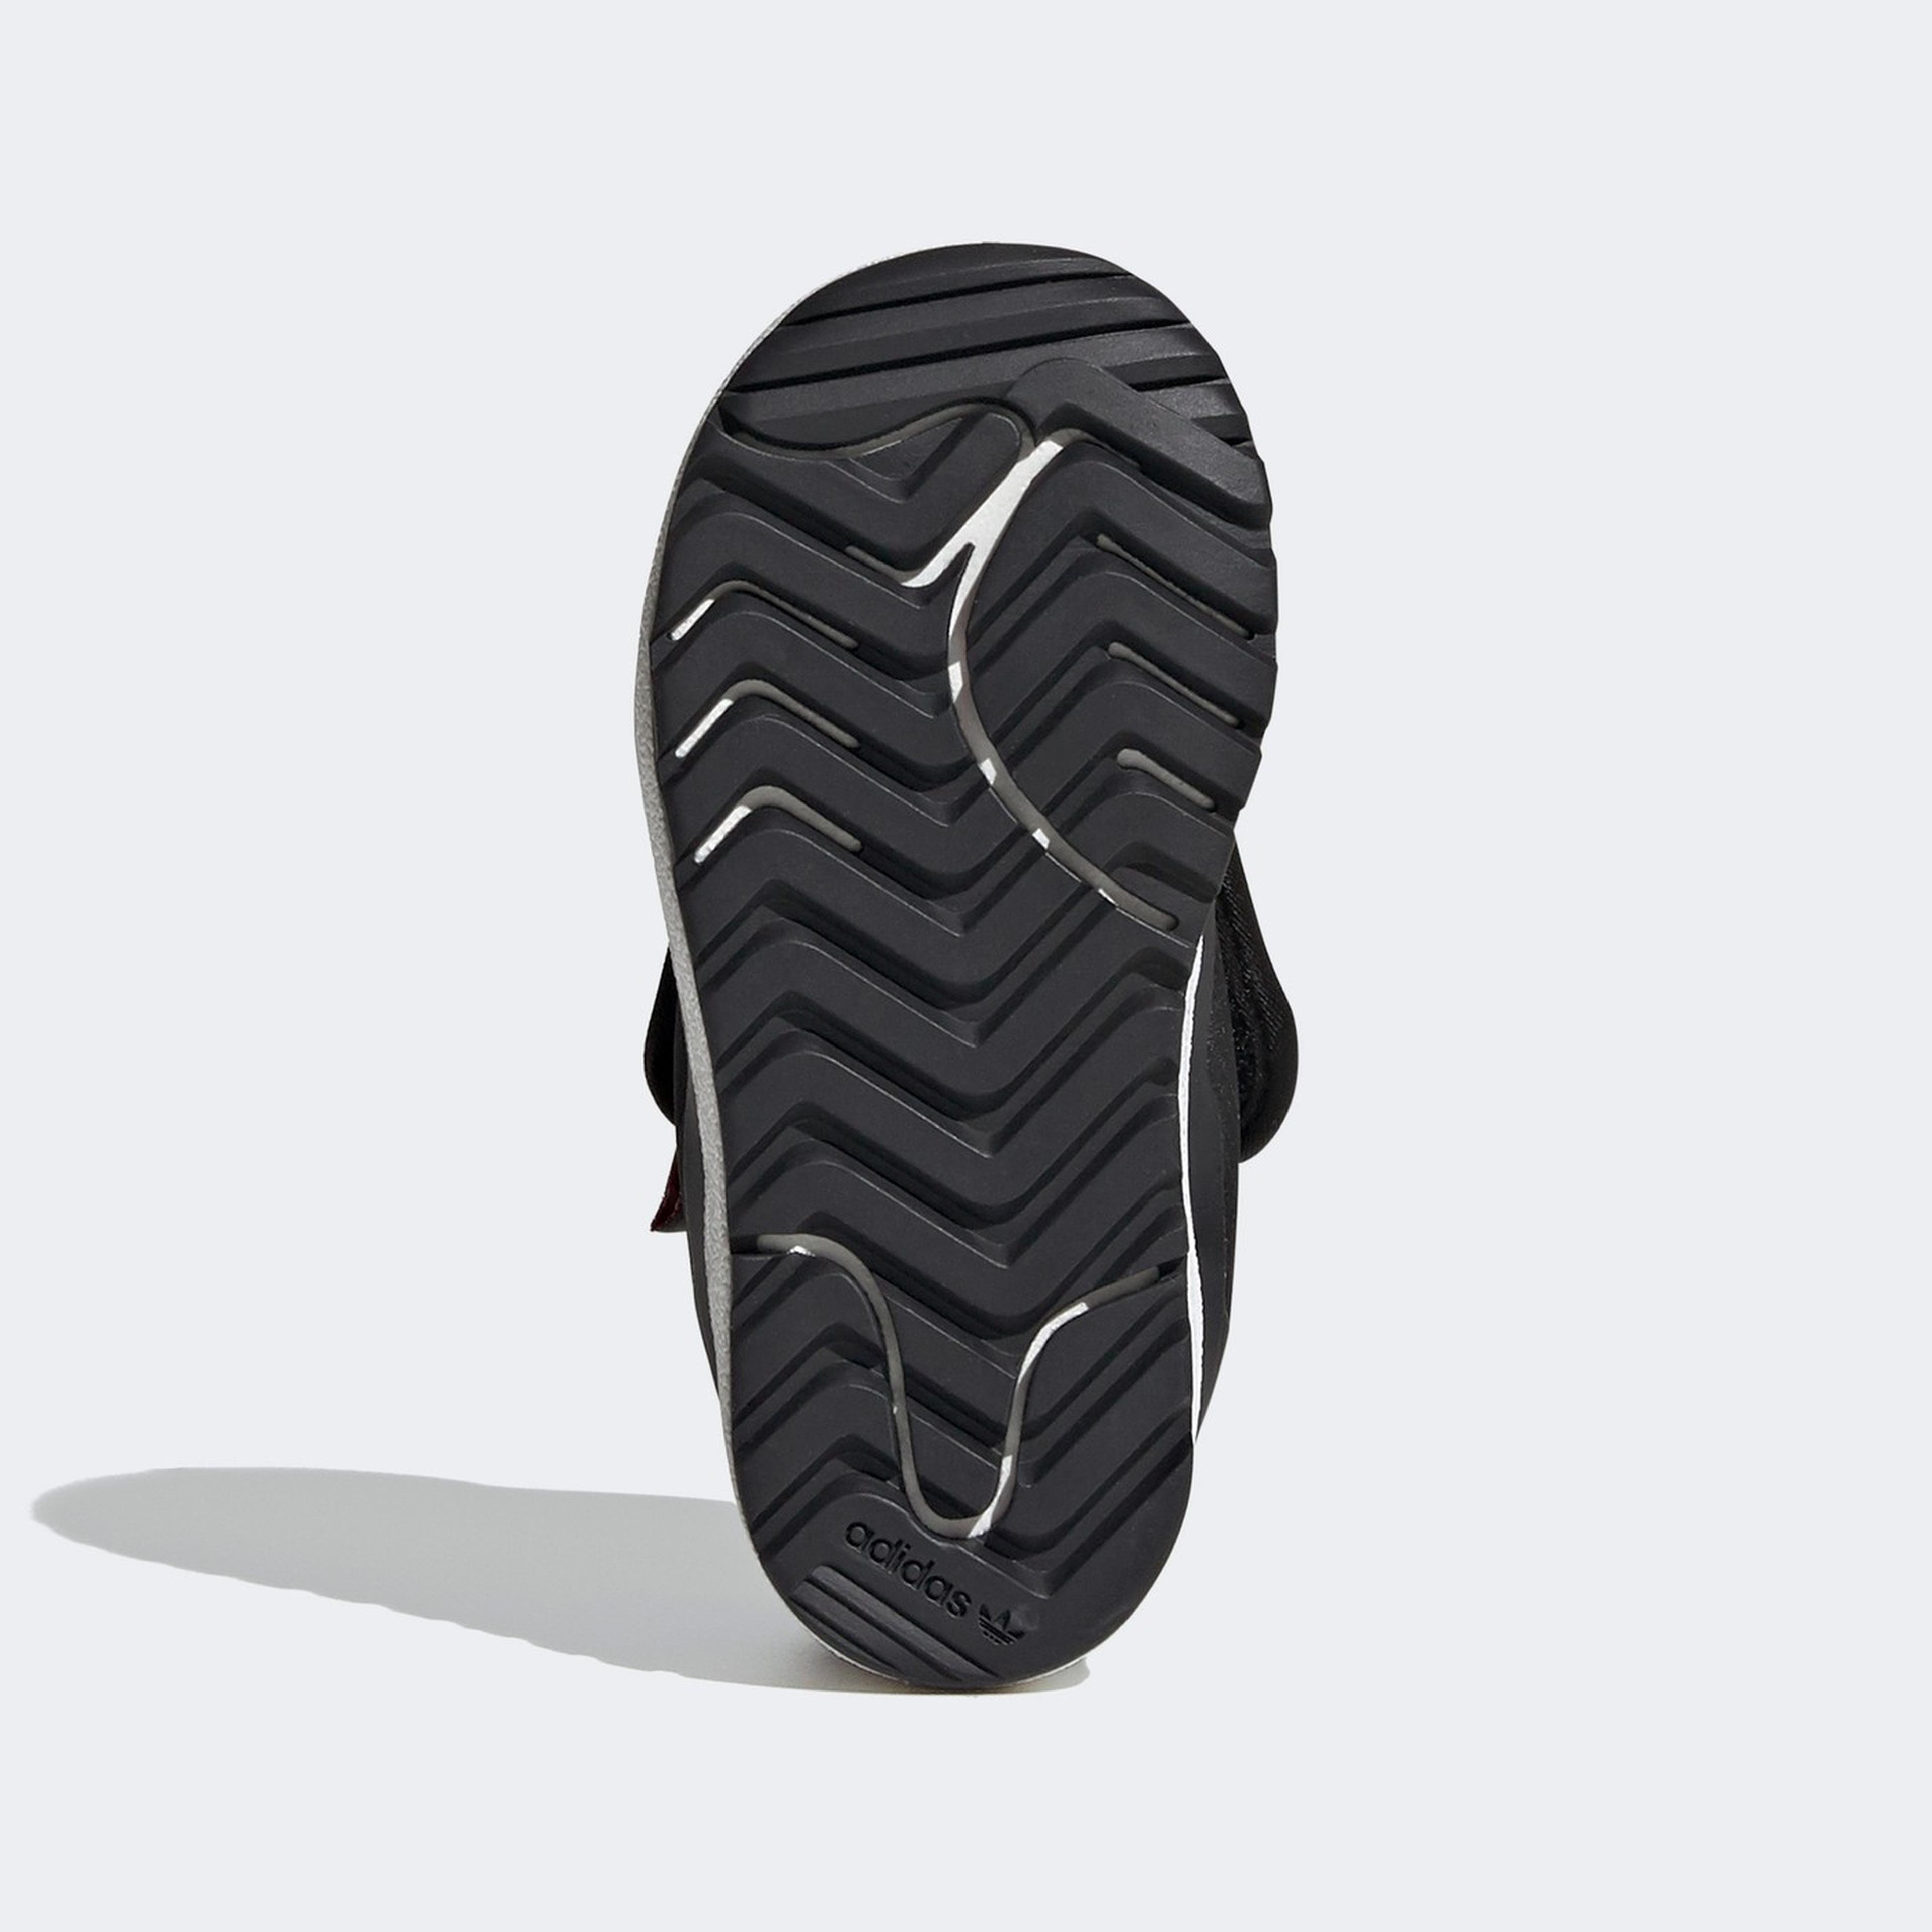 adidas Superstar 360 Boot Bebek Siyah Spor Ayakkabı